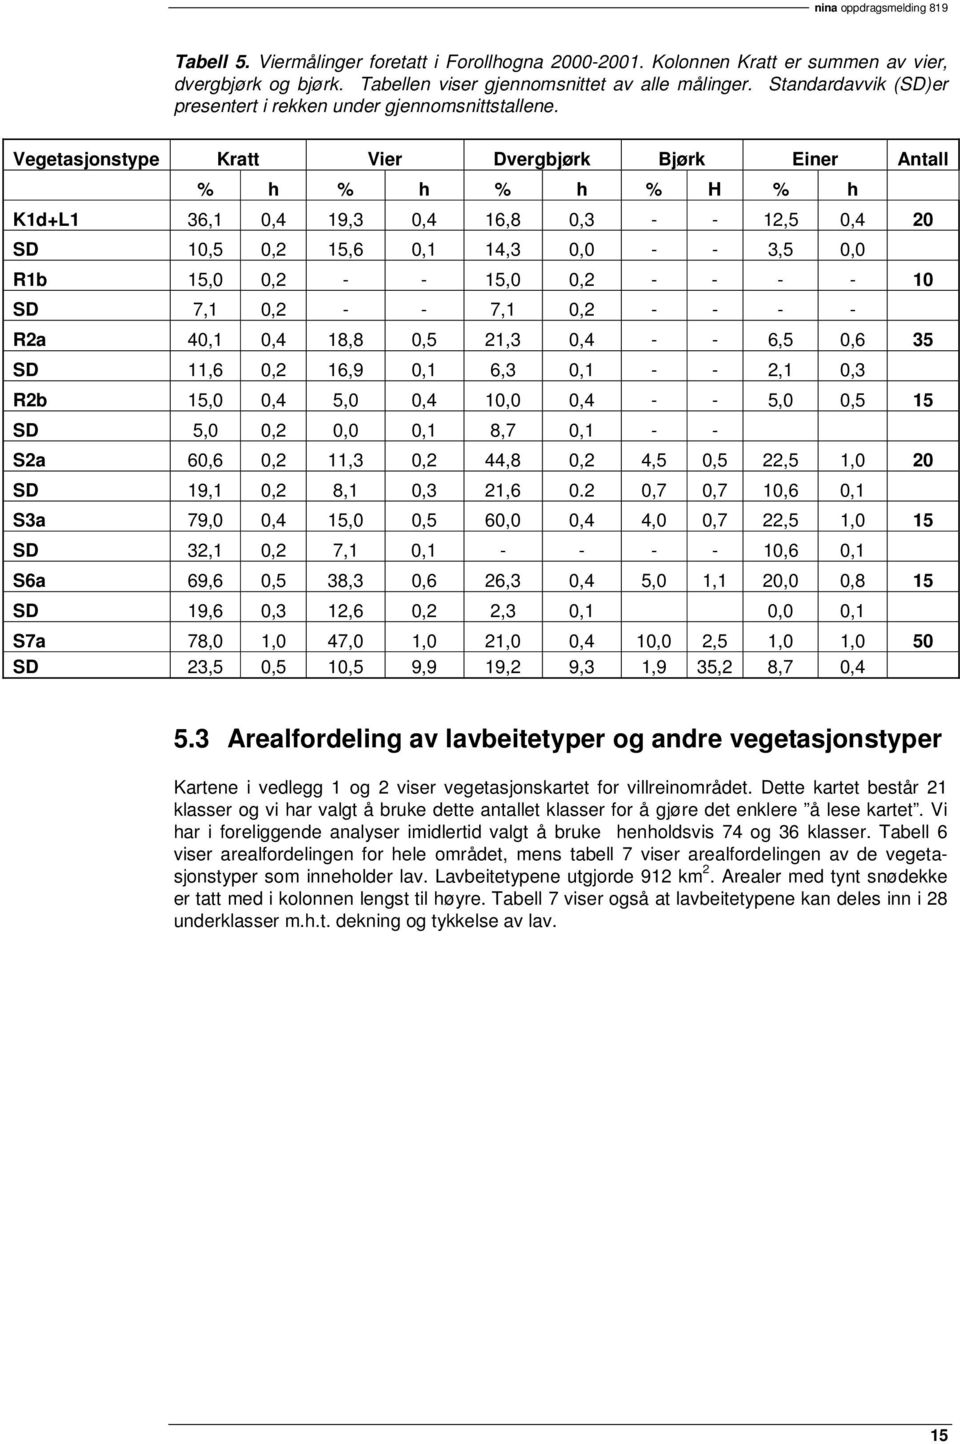 Vegetasjonstype Kratt Vier Dvergbjørk Bjørk Einer Antall % h % h % h % H % h K1d+L1 36,1 0,4 19,3 0,4 16,8 0,3 - - 12,5 0,4 20 SD 10,5 0,2 15,6 0,1 14,3 0,0 - - 3,5 0,0 R1b 15,0 0,2 - - 15,0 0,2 - -